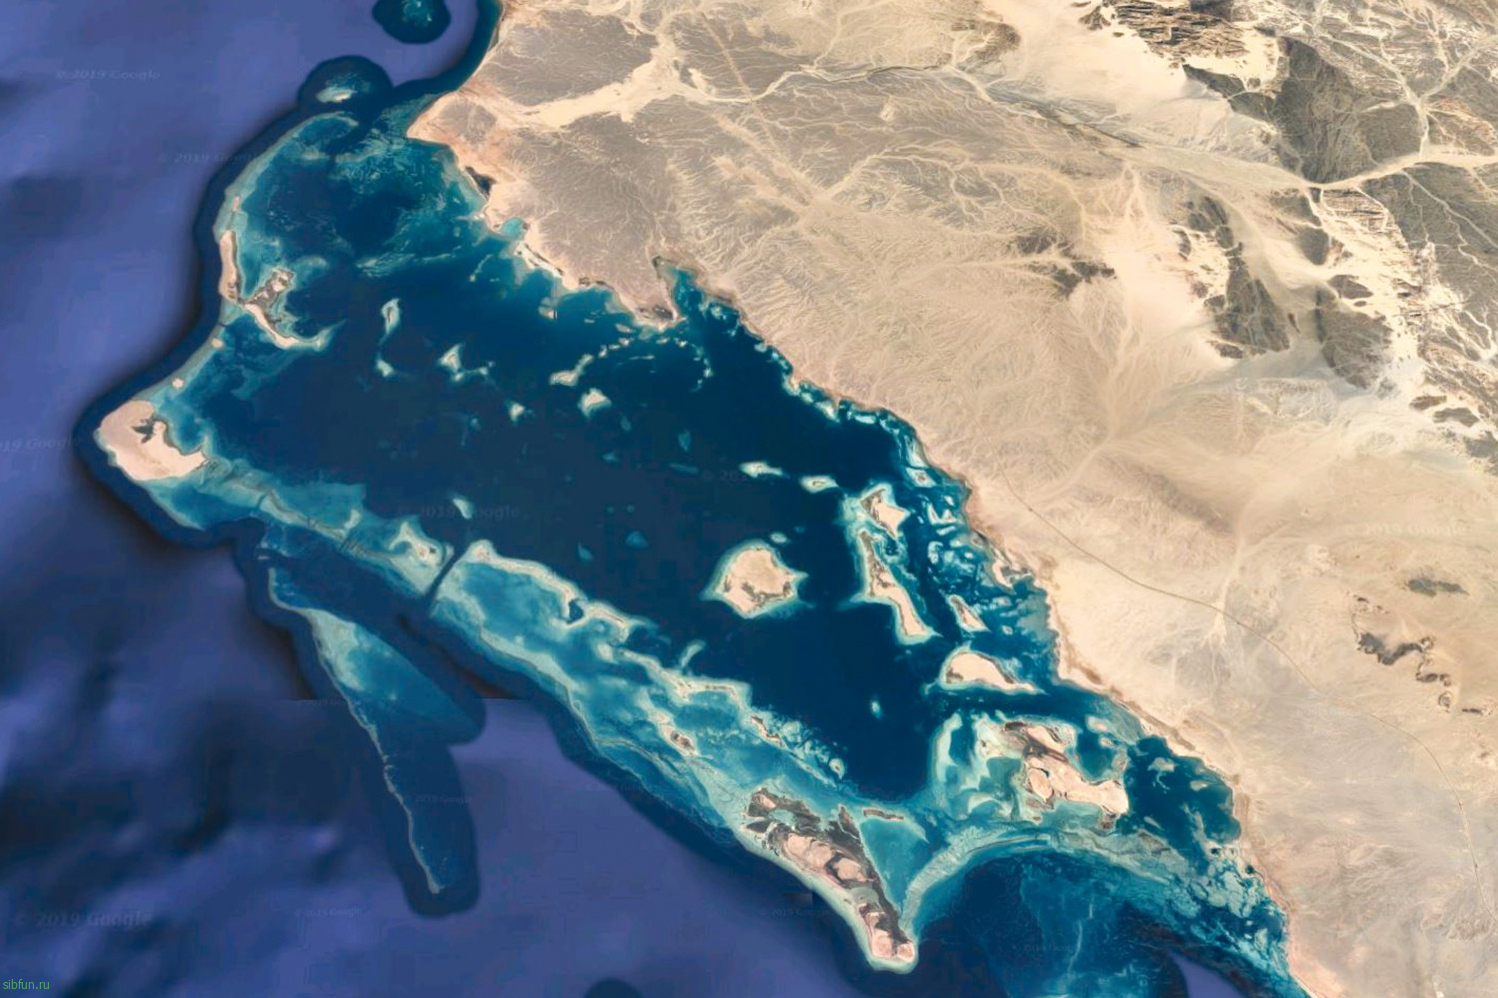 Саудовская Аравия строит суперсовременную курортную зону на Красном море